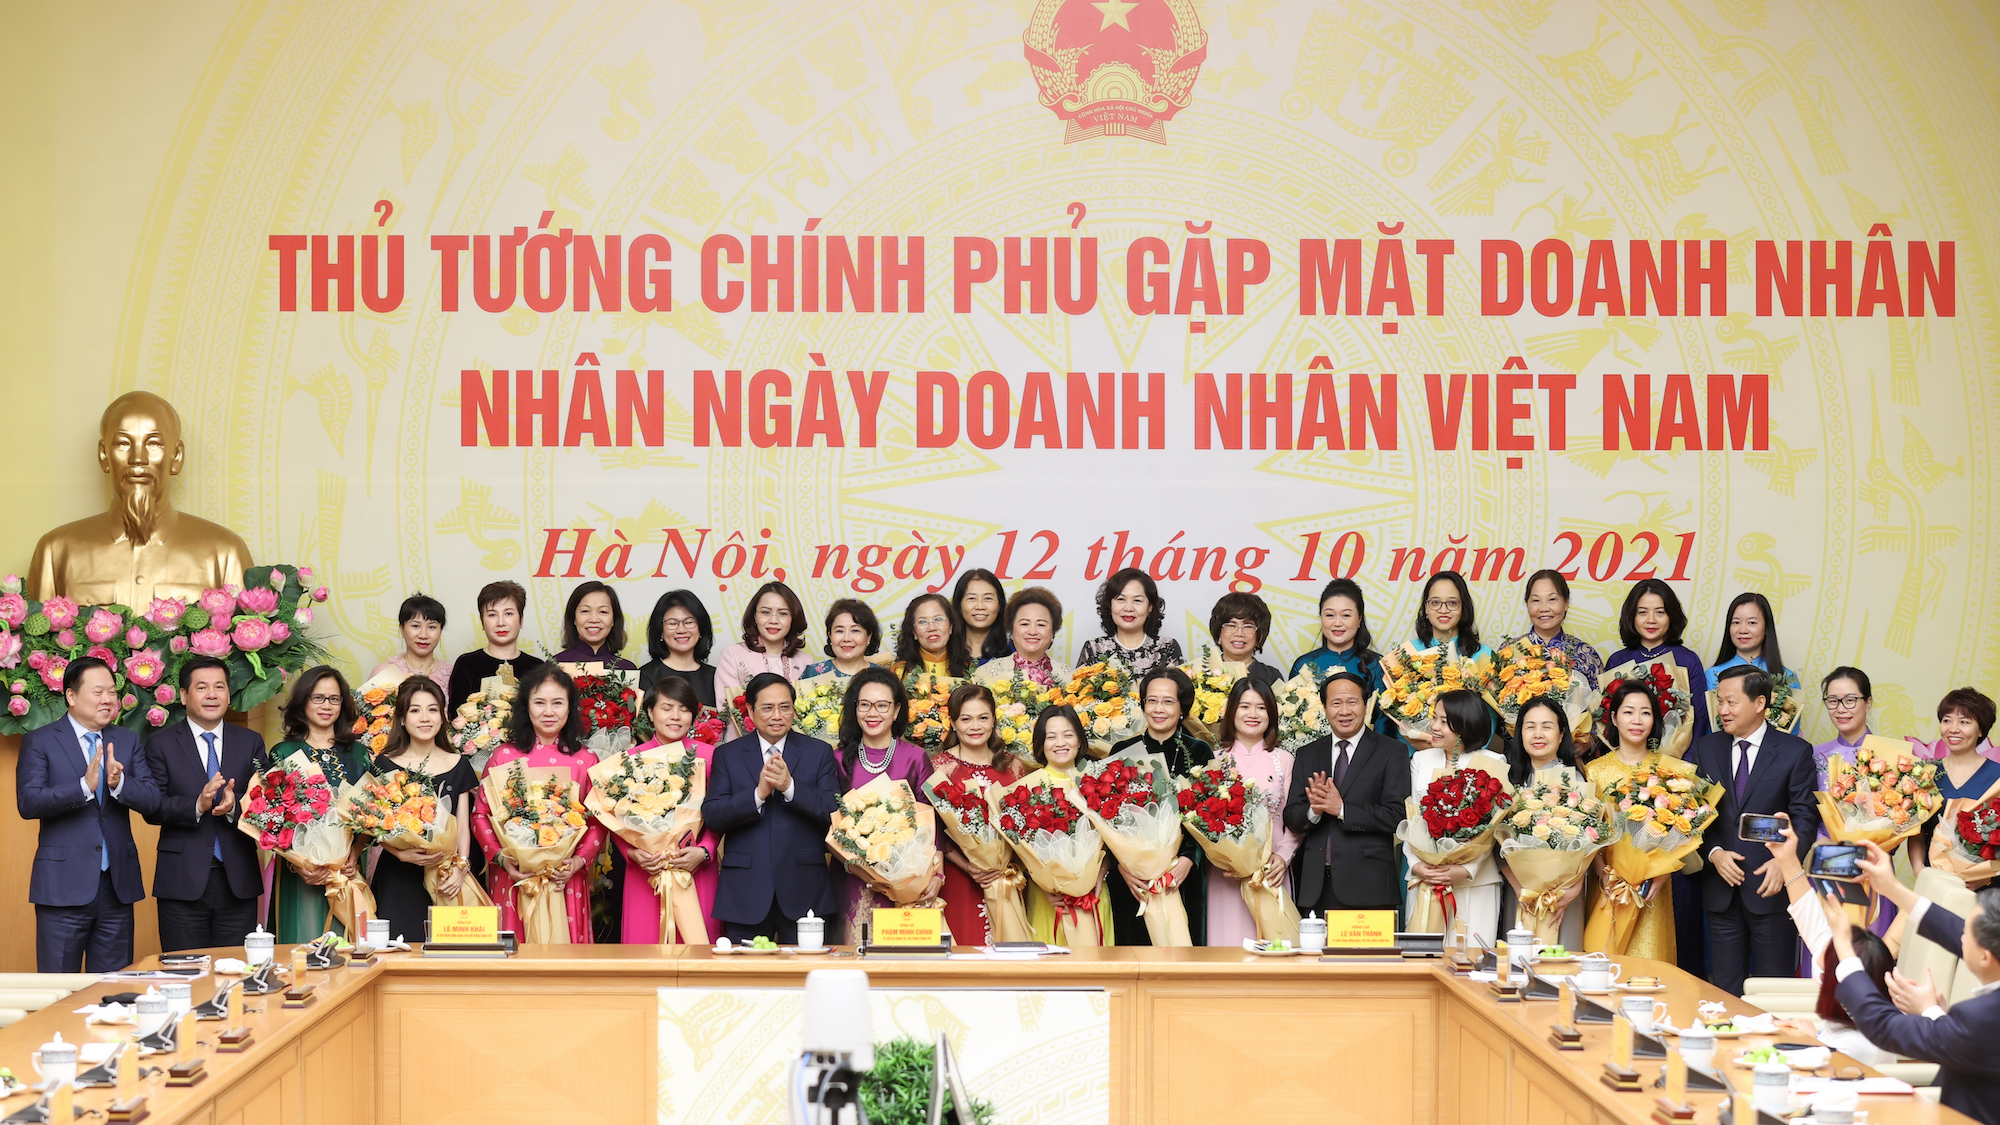   Thủ tướng Chính phủ Phạm Minh Chính gặp mặt đại diện giới doanh nhân nhân Ngày Doanh nhân Việt Nam 2021.  